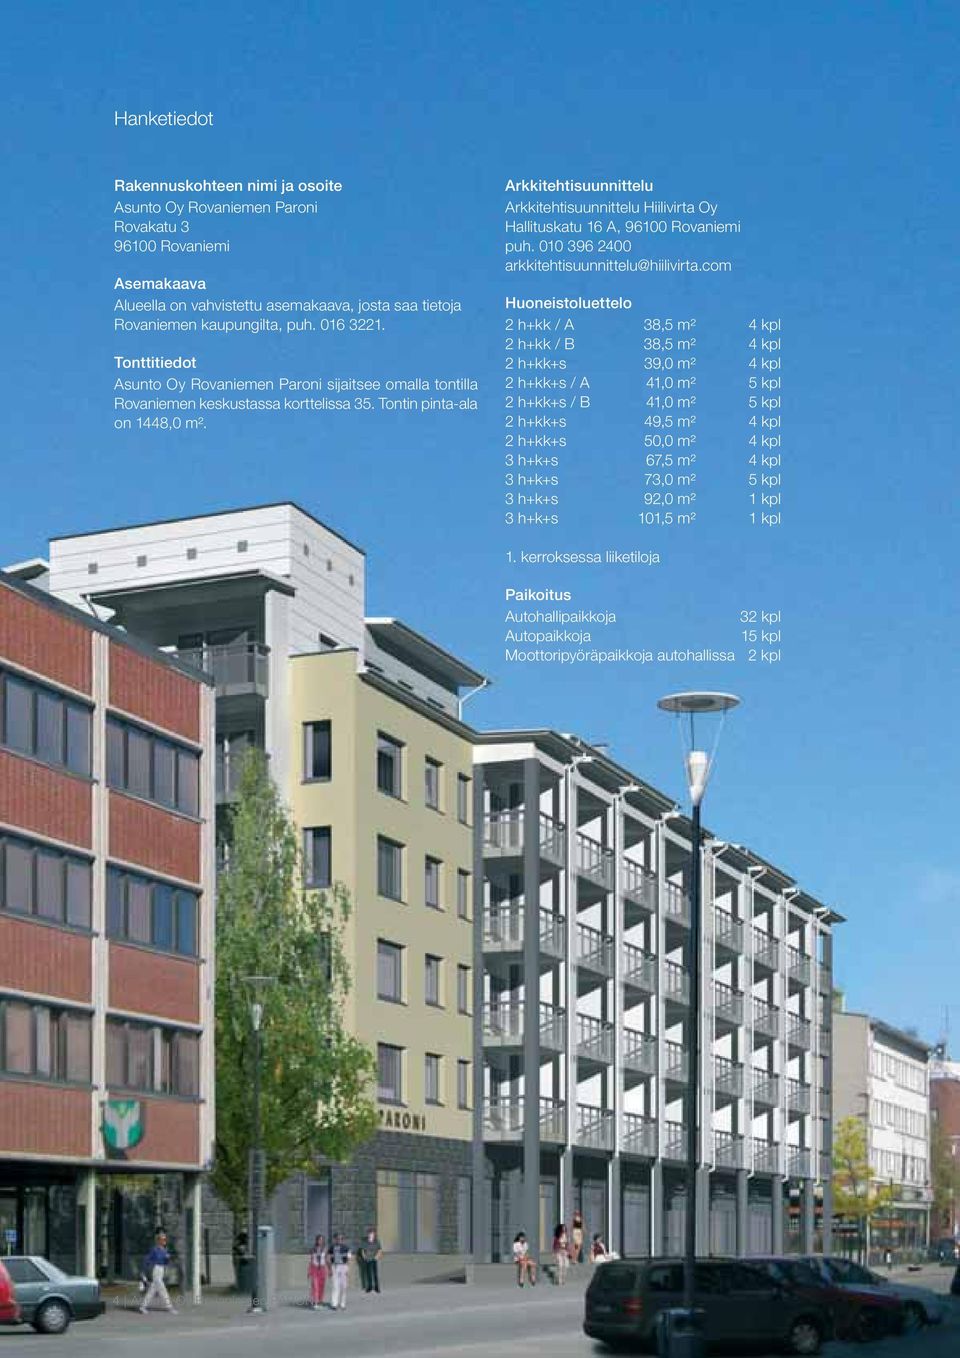 Arkkitehtisuunnittelu Arkkitehtisuunnittelu Hiilivirta Oy Hallituskatu 16 A, 96100 Rovaniemi puh. 010 396 2400 arkkitehtisuunnittelu@hiilivirta.